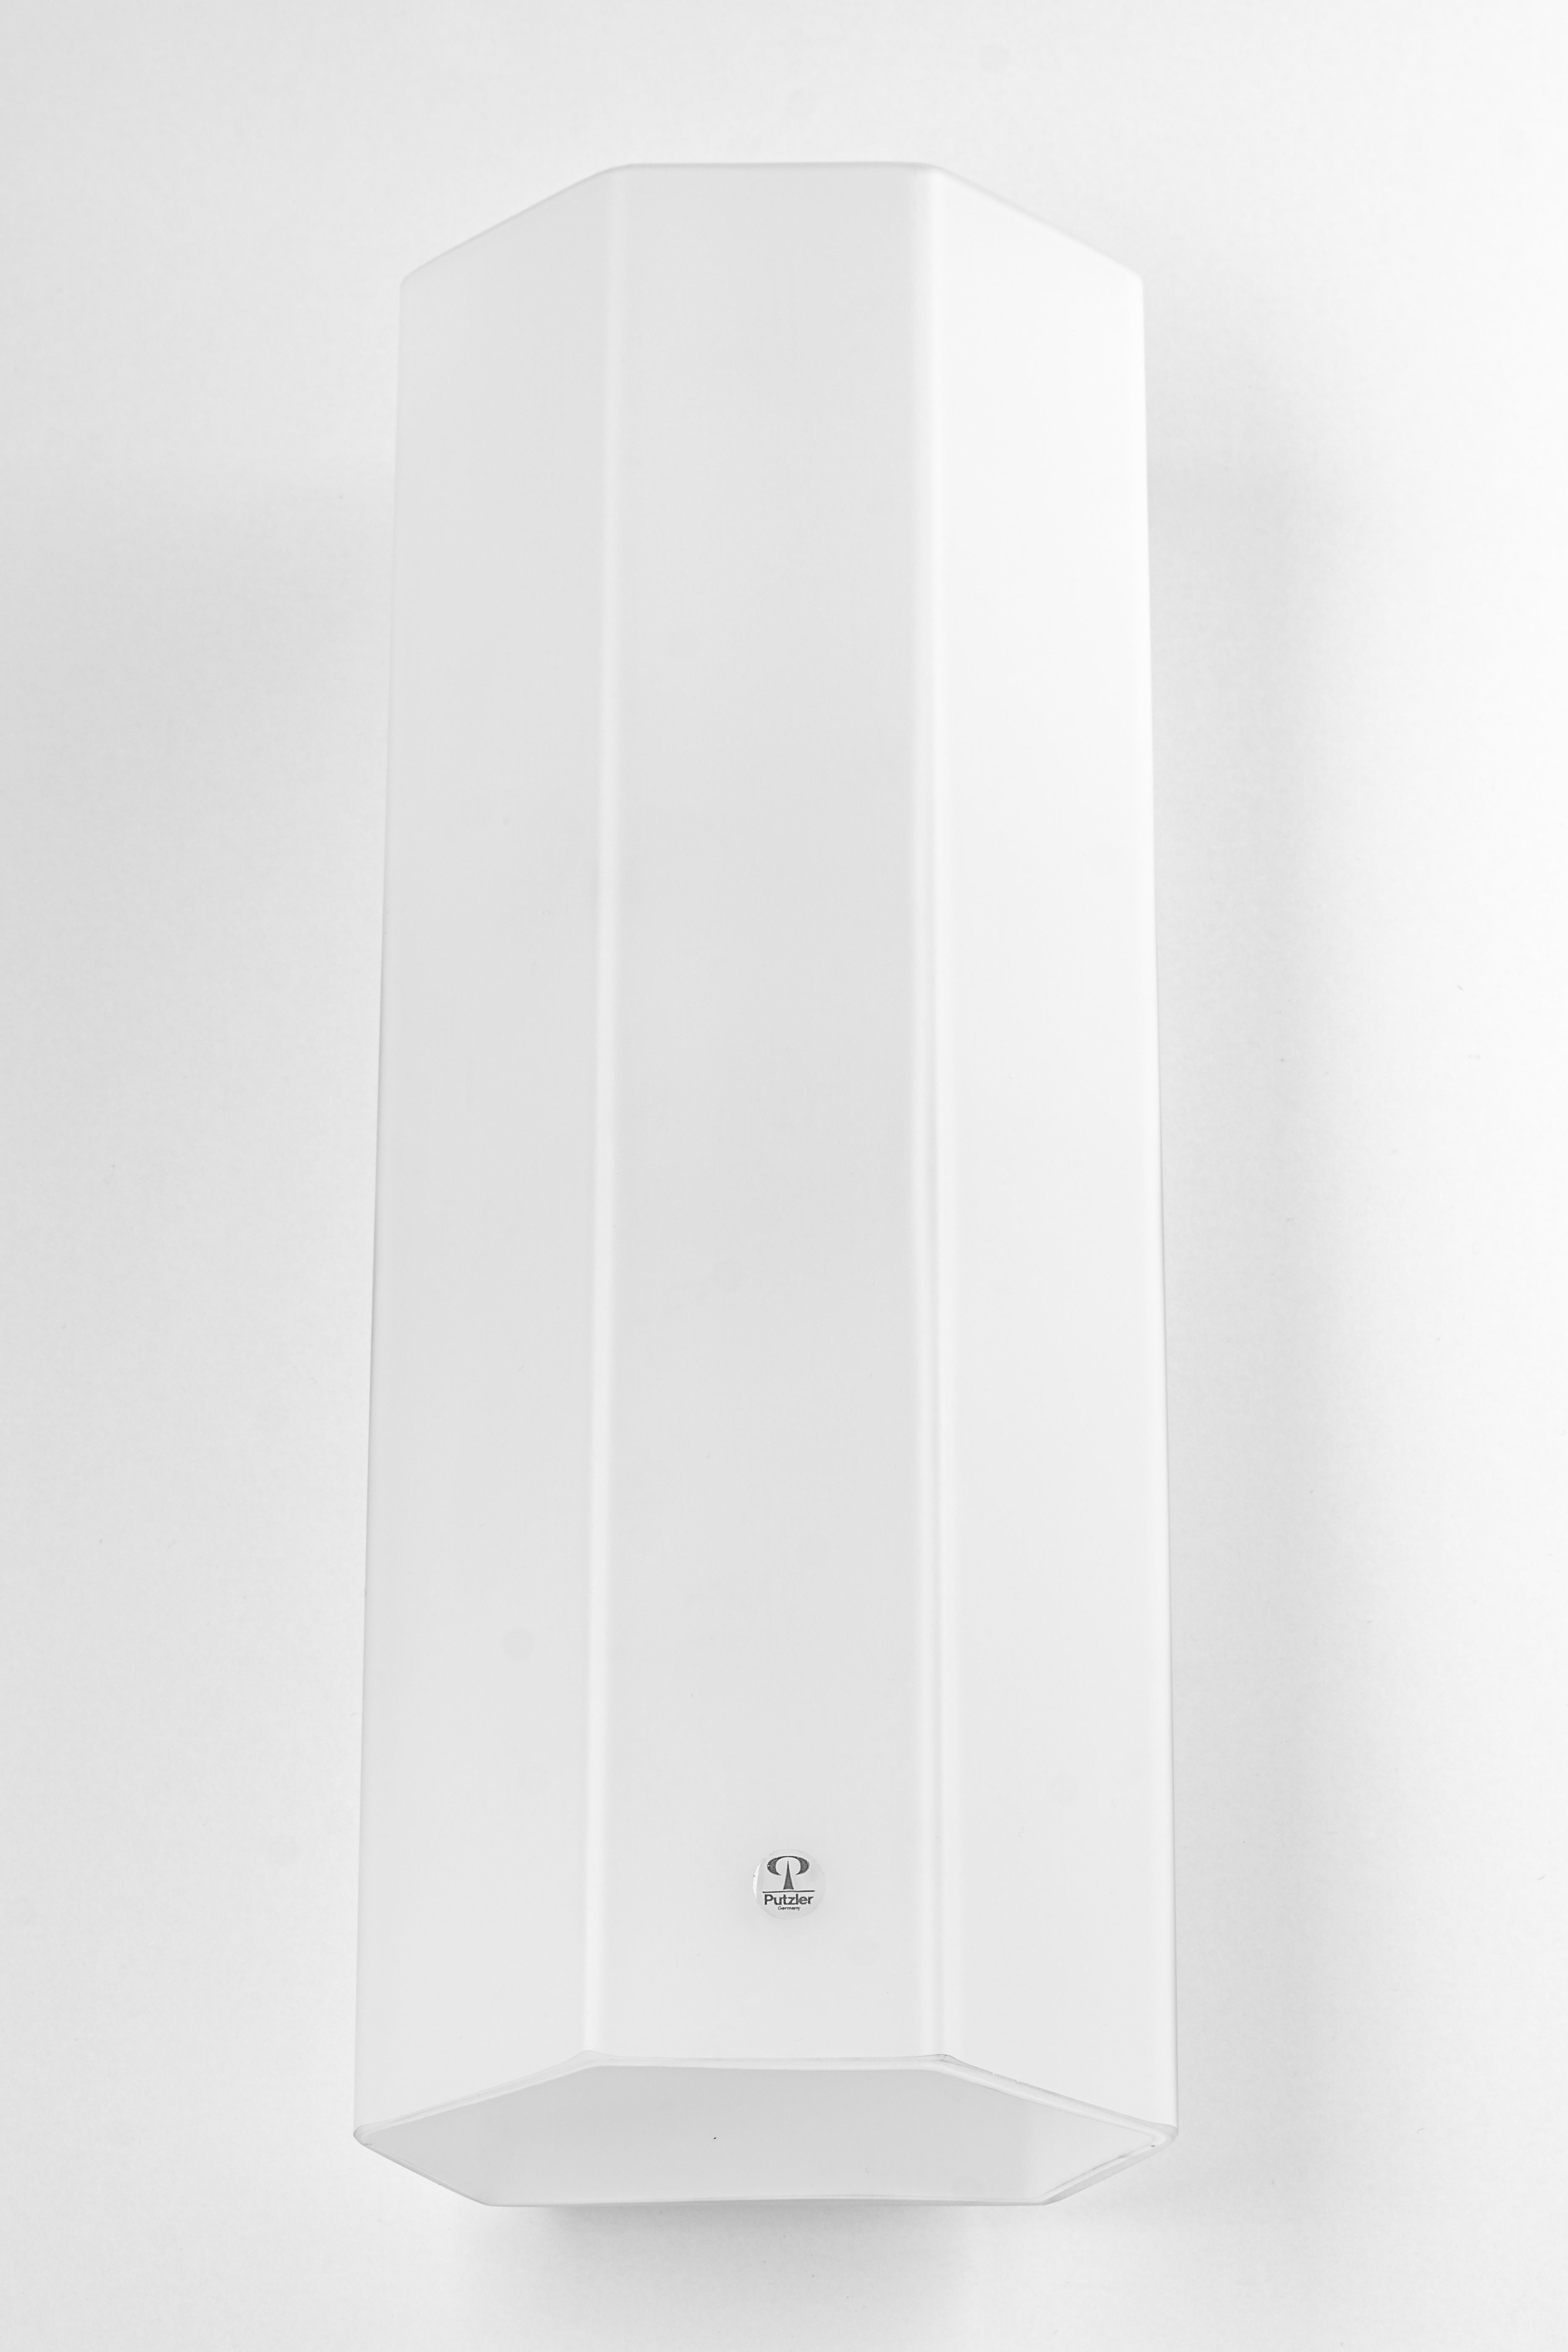 Paar Opalglas auf weißem Rahmen Wandleuchten von Peil & Putzler, Deutschland, 1970er Jahre
Wunderbarer Lichteffekt.
Hochwertig und in sehr gutem Zustand. Gereinigt, gut verkabelt und einsatzbereit. 

Jede Leuchte benötigt 1 x E27 Standard